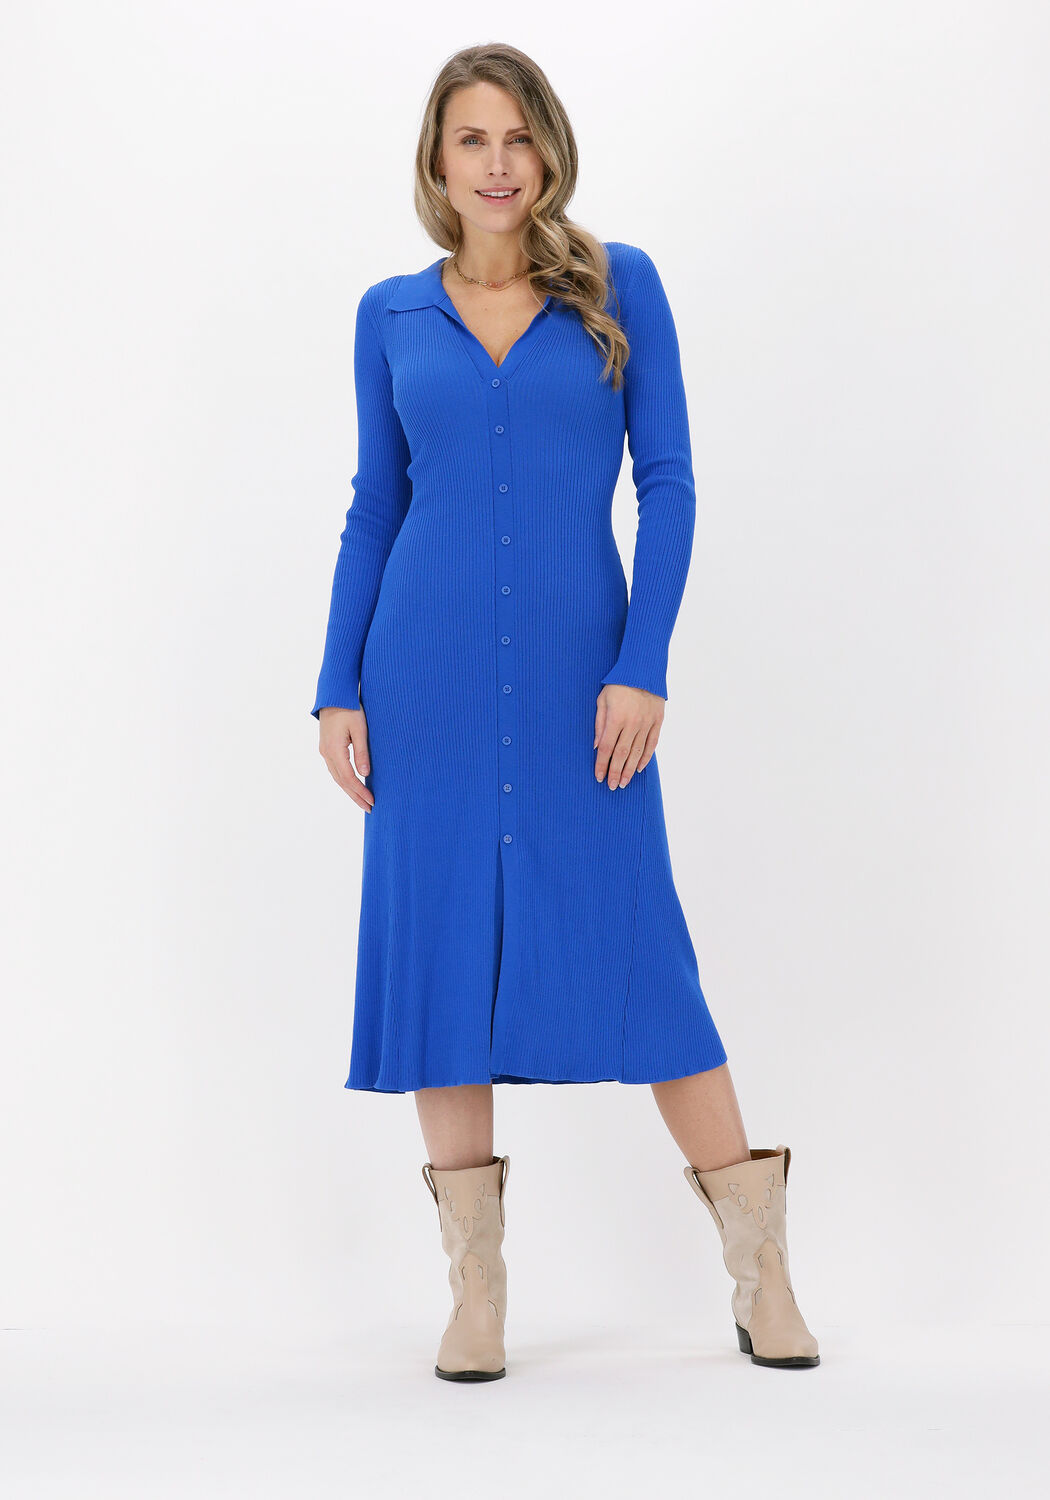 Neo Noir Jupiter Knit Dress in Blau Damen Bekleidung Kleider Freizeitkleider und Tageskleider 